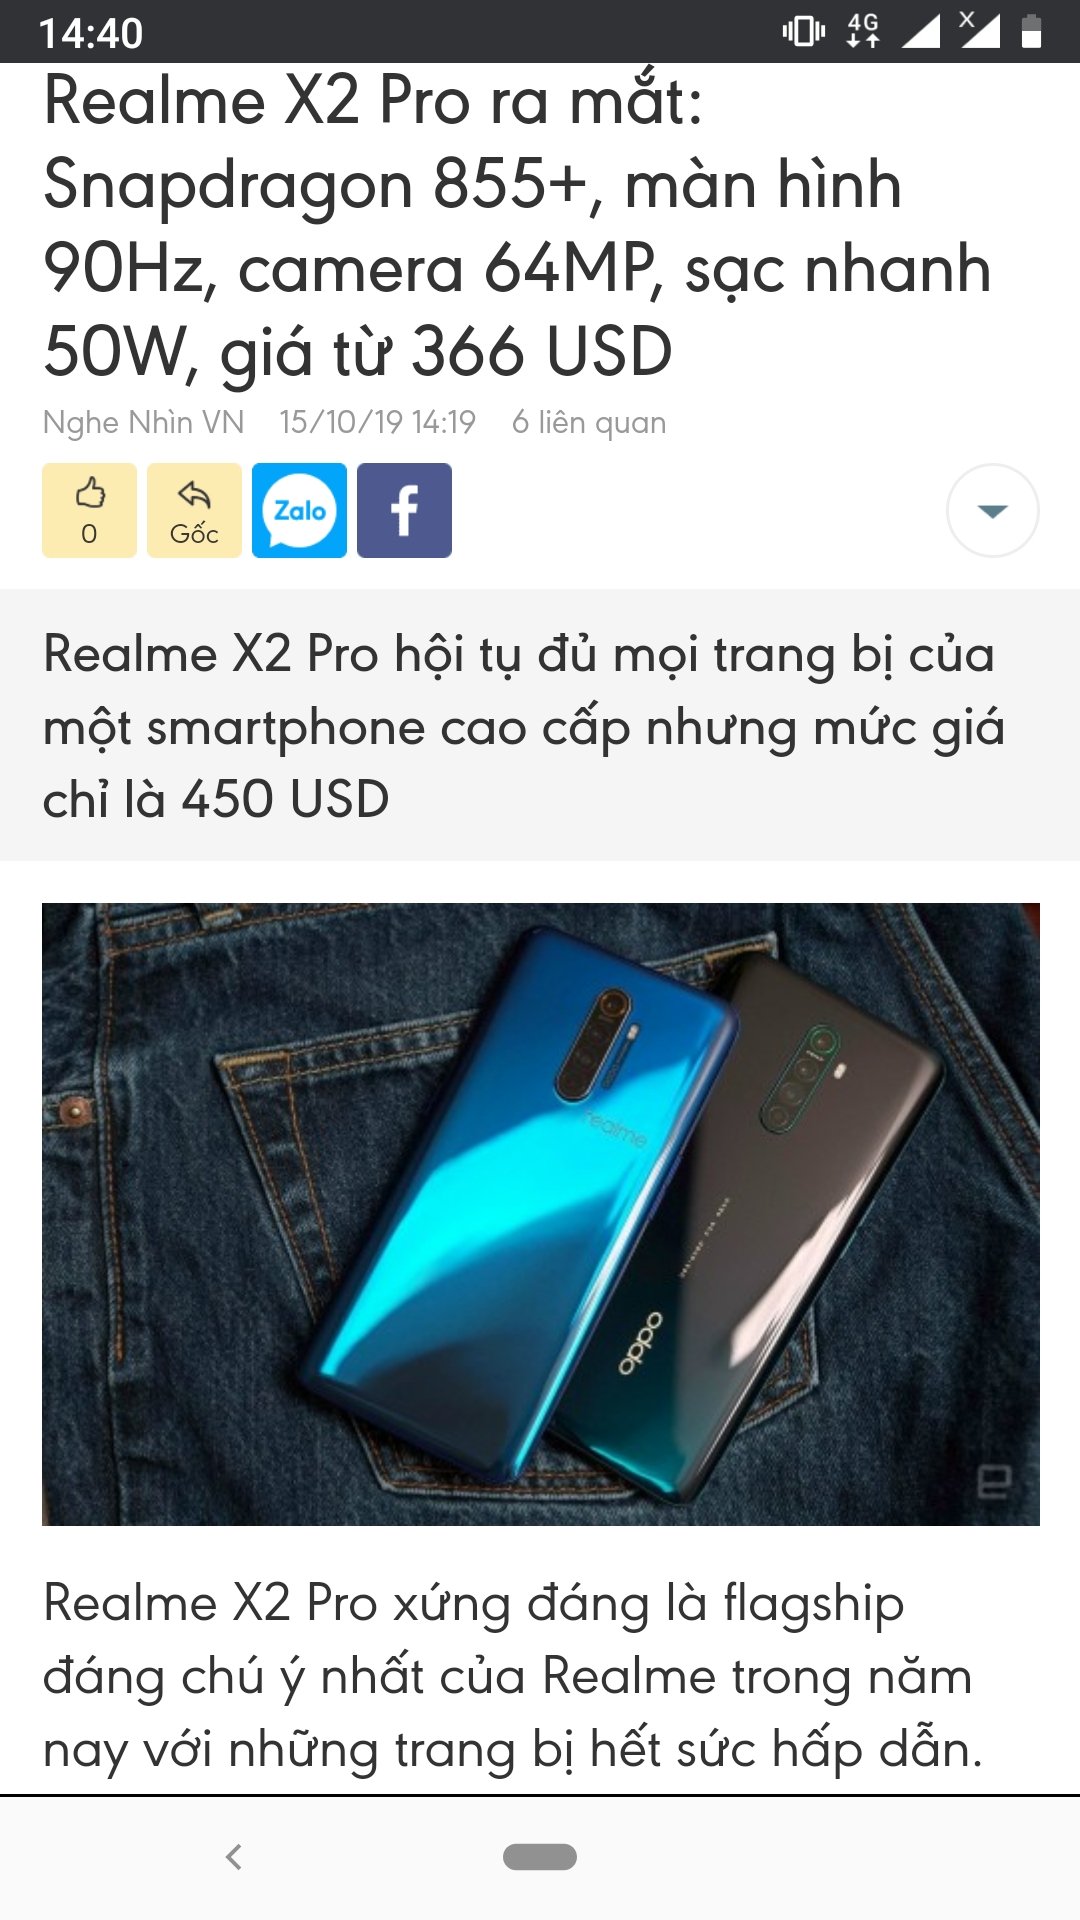 Realme X2 Pro chính thức ra mắt | Tinh tế